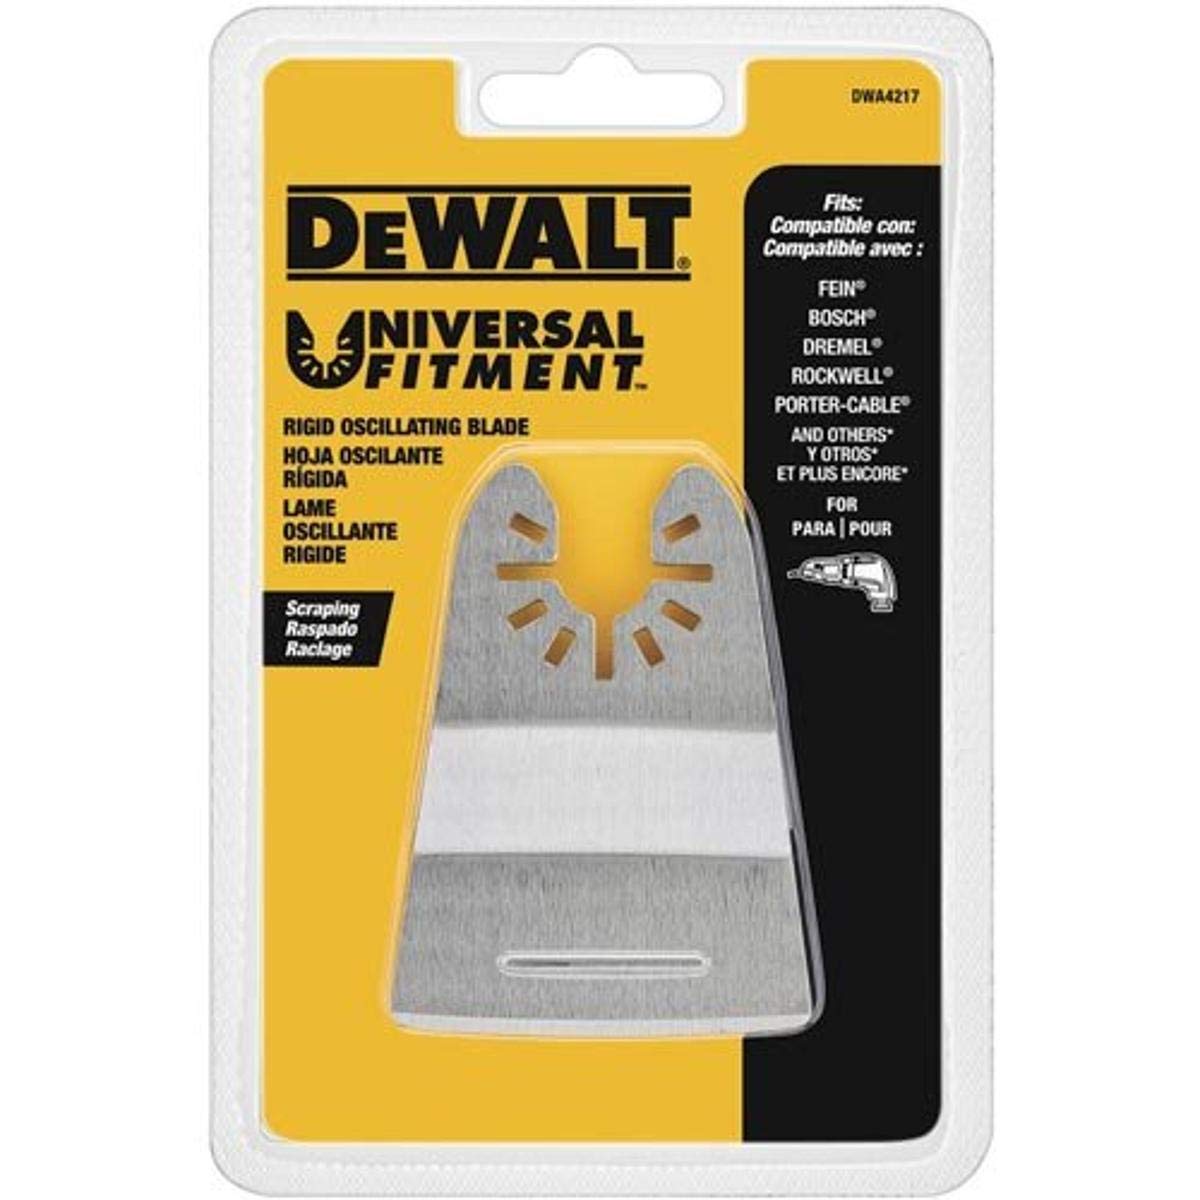 DEWALT Oscillating Rigid Scraper Tool Blade (DWA4217) $5.56 + Free Shipping w/ Prime or on $35+